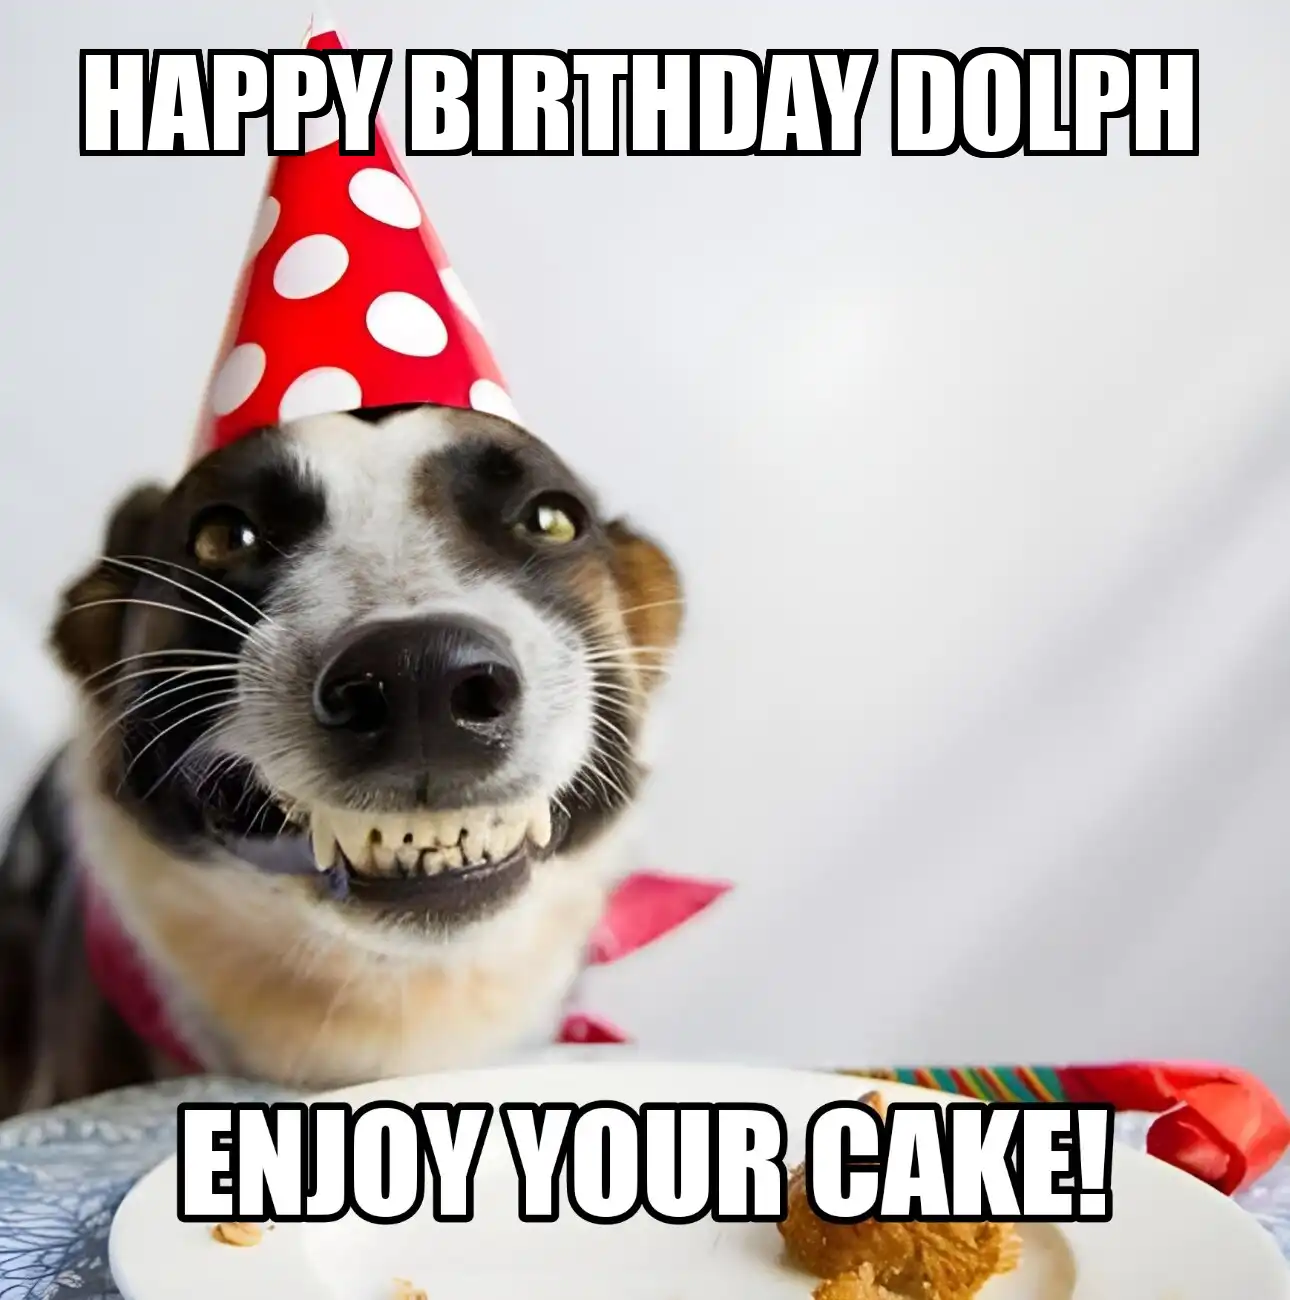 Happy Birthday Dolph Enjoy Your Cake Dog Meme